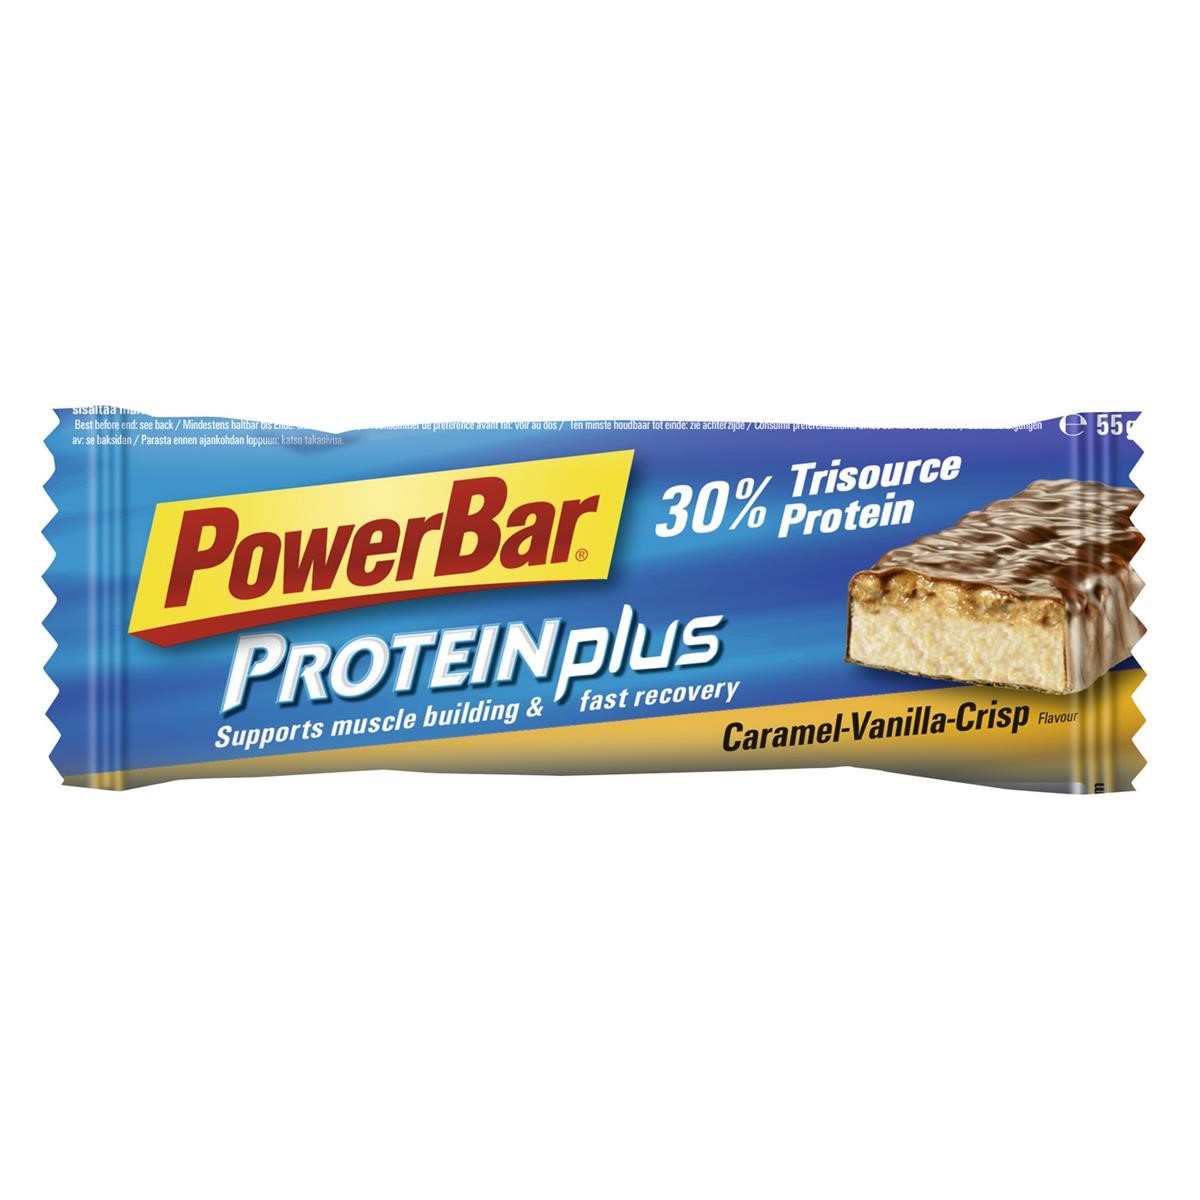 Lebensmittel/Fanartikel/Medien-Essen & Getränke - PowerBar Protein Plus Riegel 30% Caramel-Vanille-Crisp, 55g